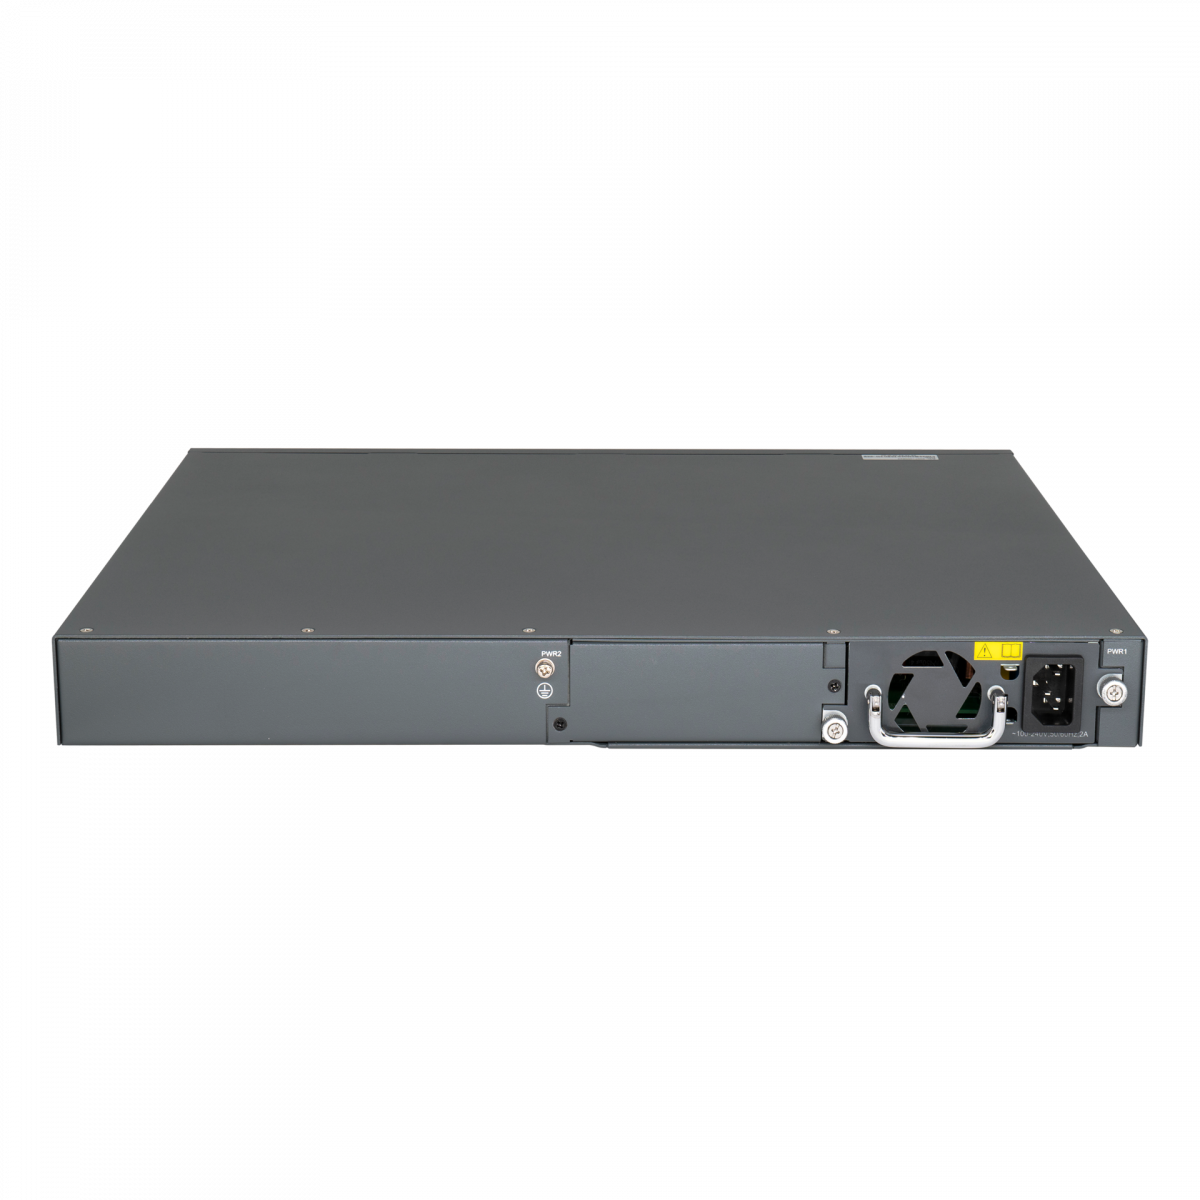 Управляемый коммутатор уровня 3 BDCOM S3900-48M6X, 24x10/100/1000Base-T, 24x100/1000Base-X SFP, 6x1/10GE SFP+, Hot Swap БП 1+1, в комплекте 1x PSU AC